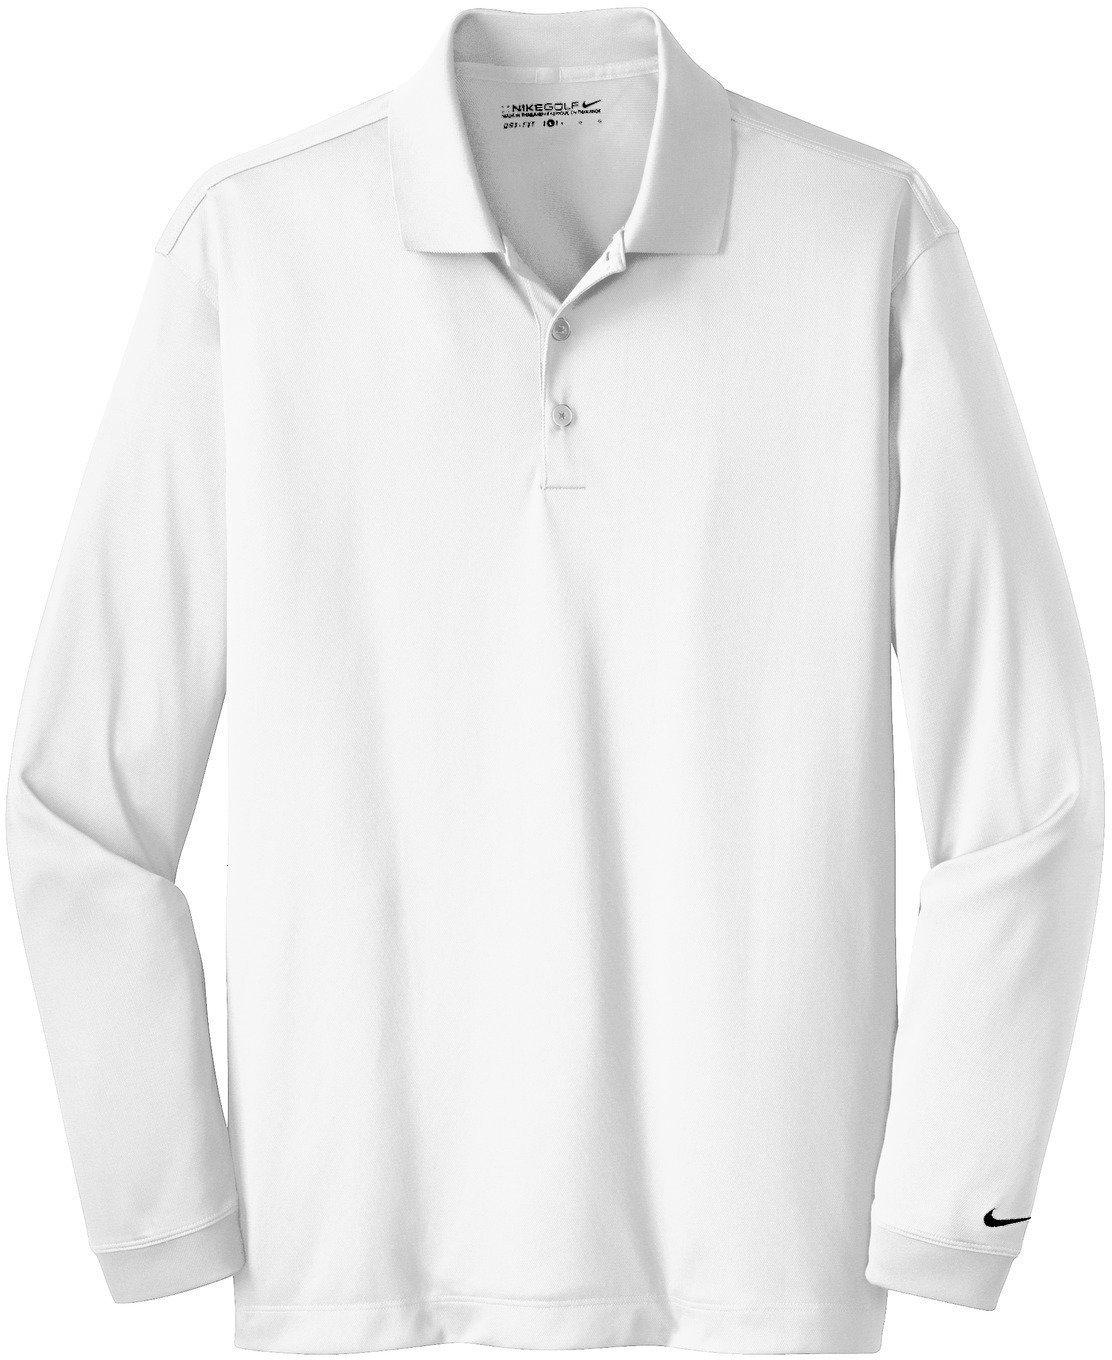 Koszulka Polo Nike Dry Core Koszulka Polo Do Golfa Damska Z Długim Rękawem White/Black XS